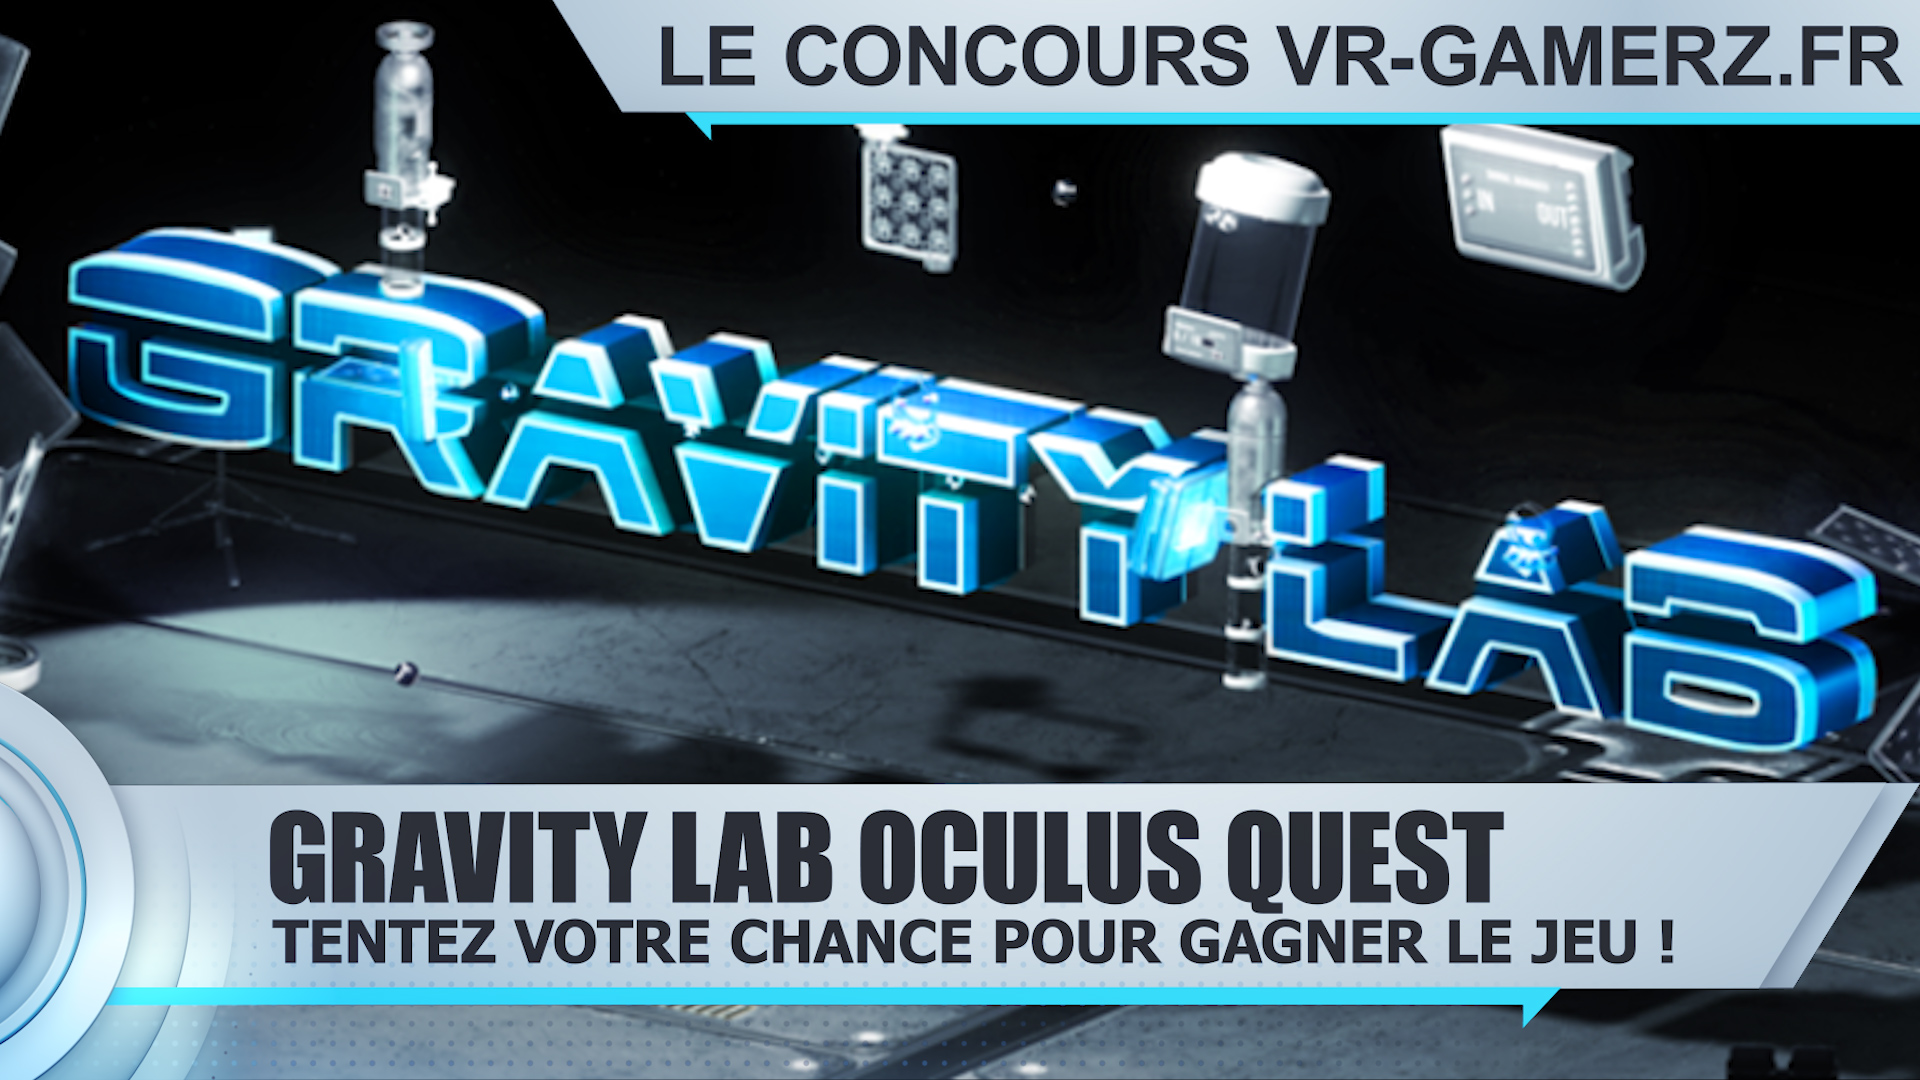 Tentez votre chance pour remporter Gravity lab sur Oculus quest